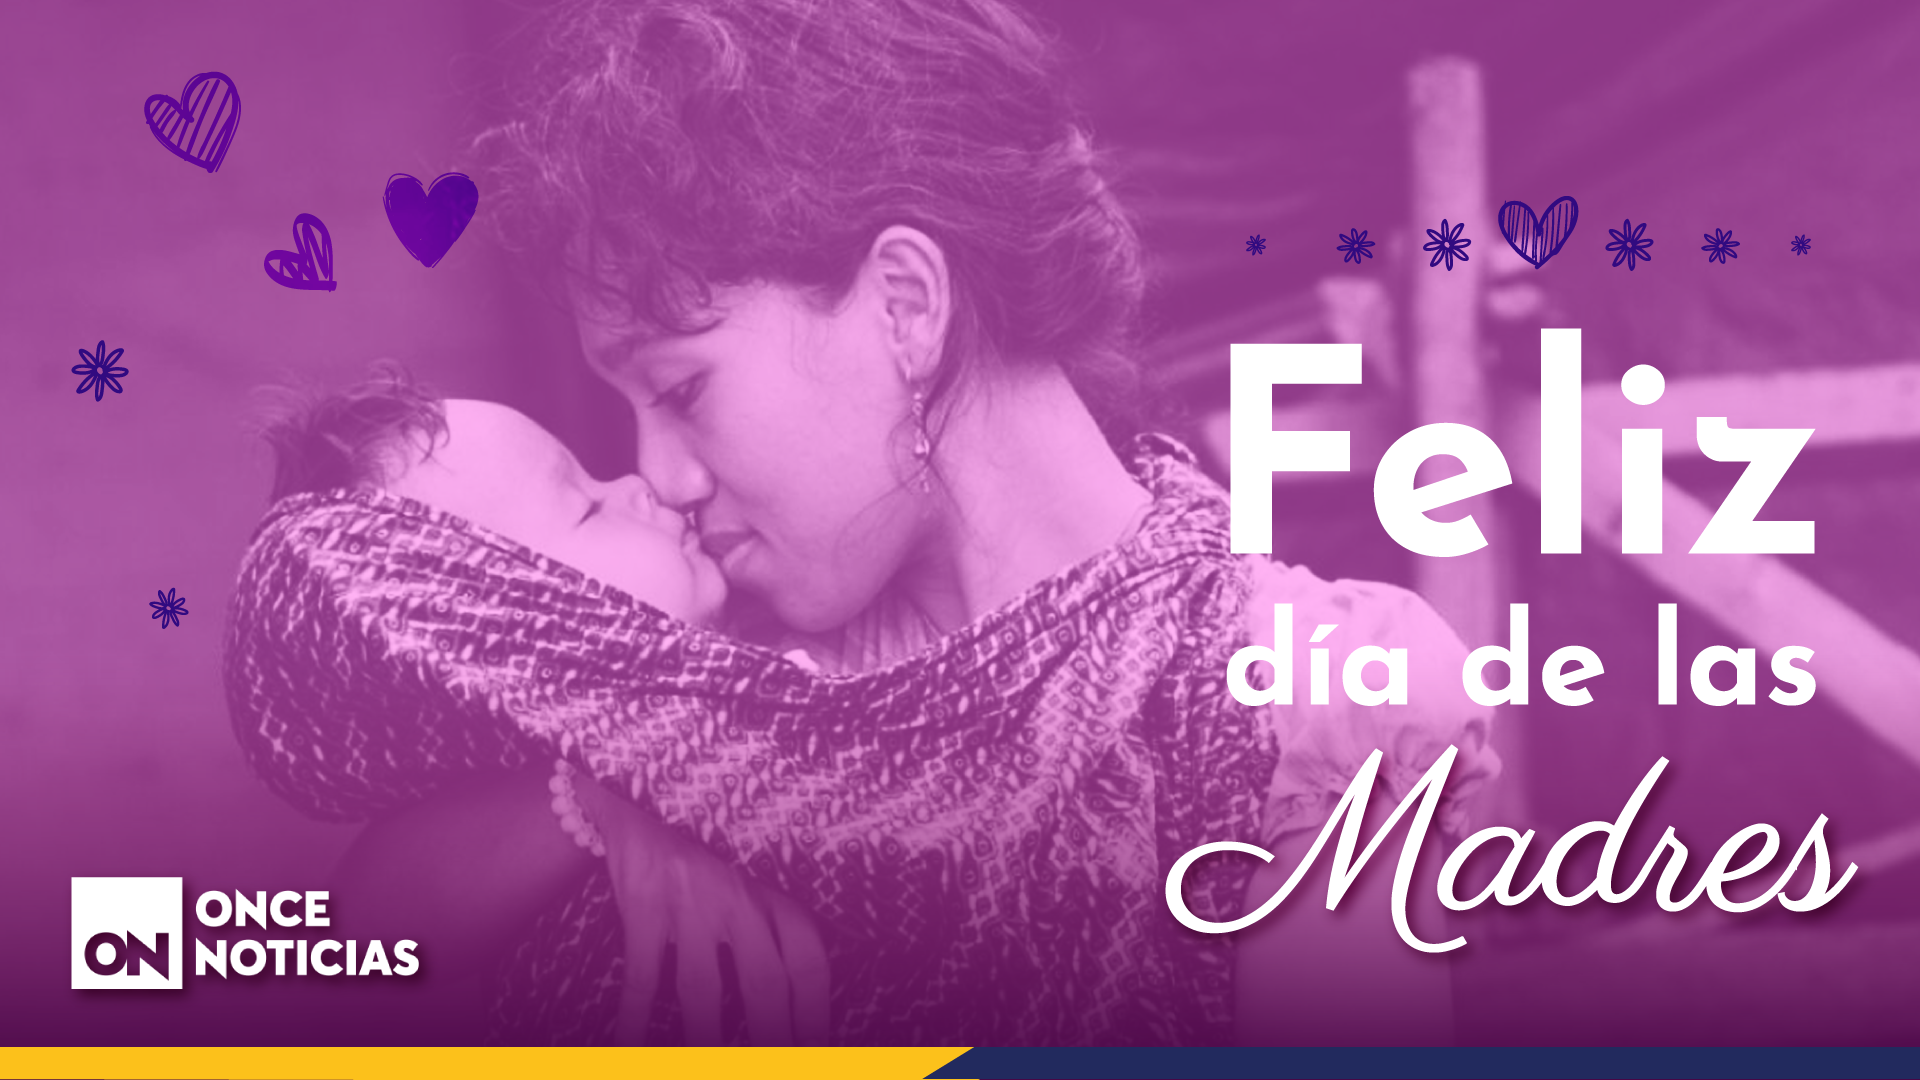 ella ninguna! Hoy se celebra el “Día de las madres” en Honduras